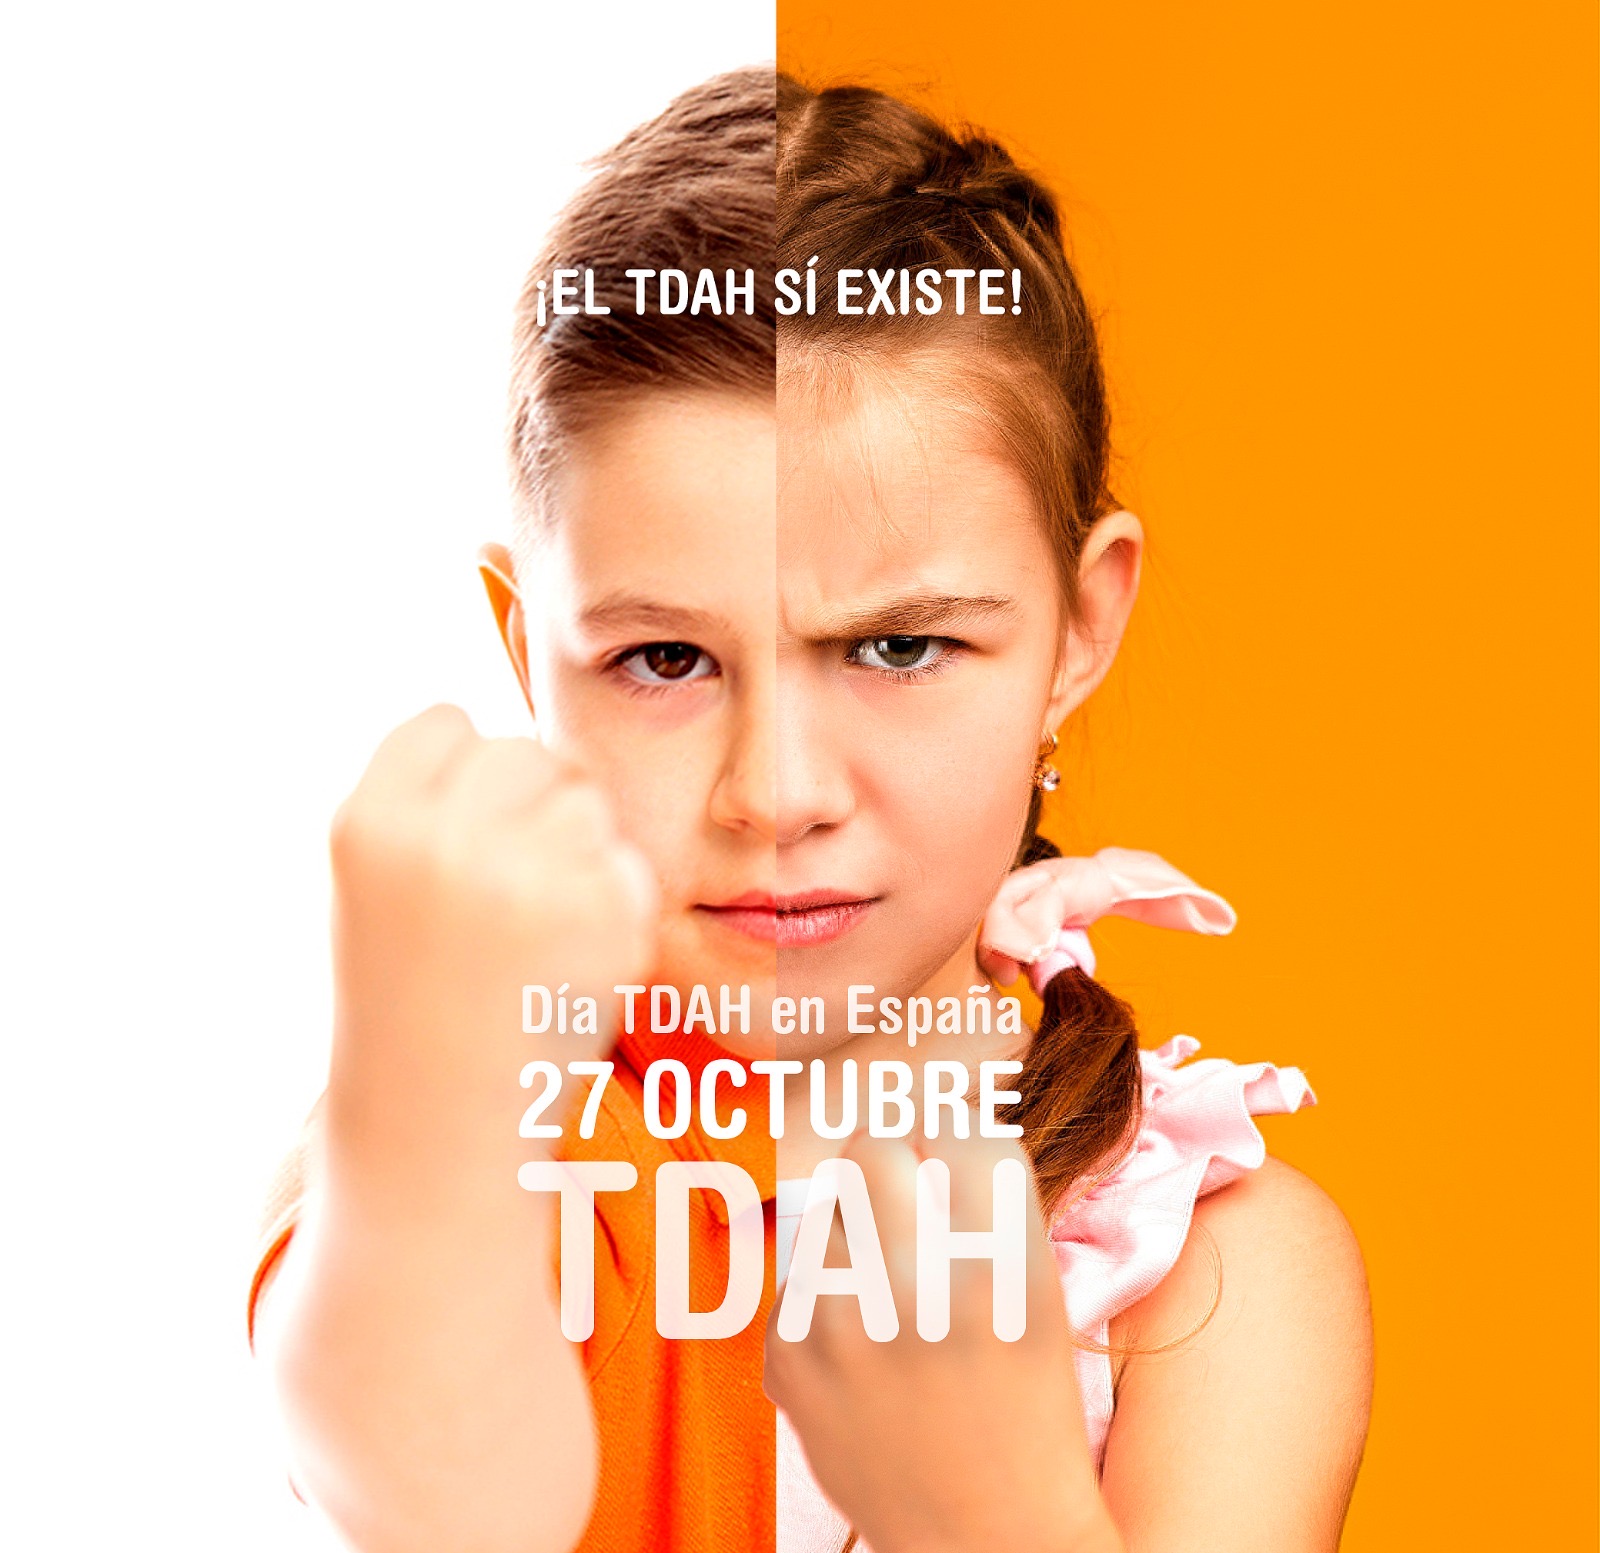 Día del TDAH en España. ¡El TDAH sí existe!